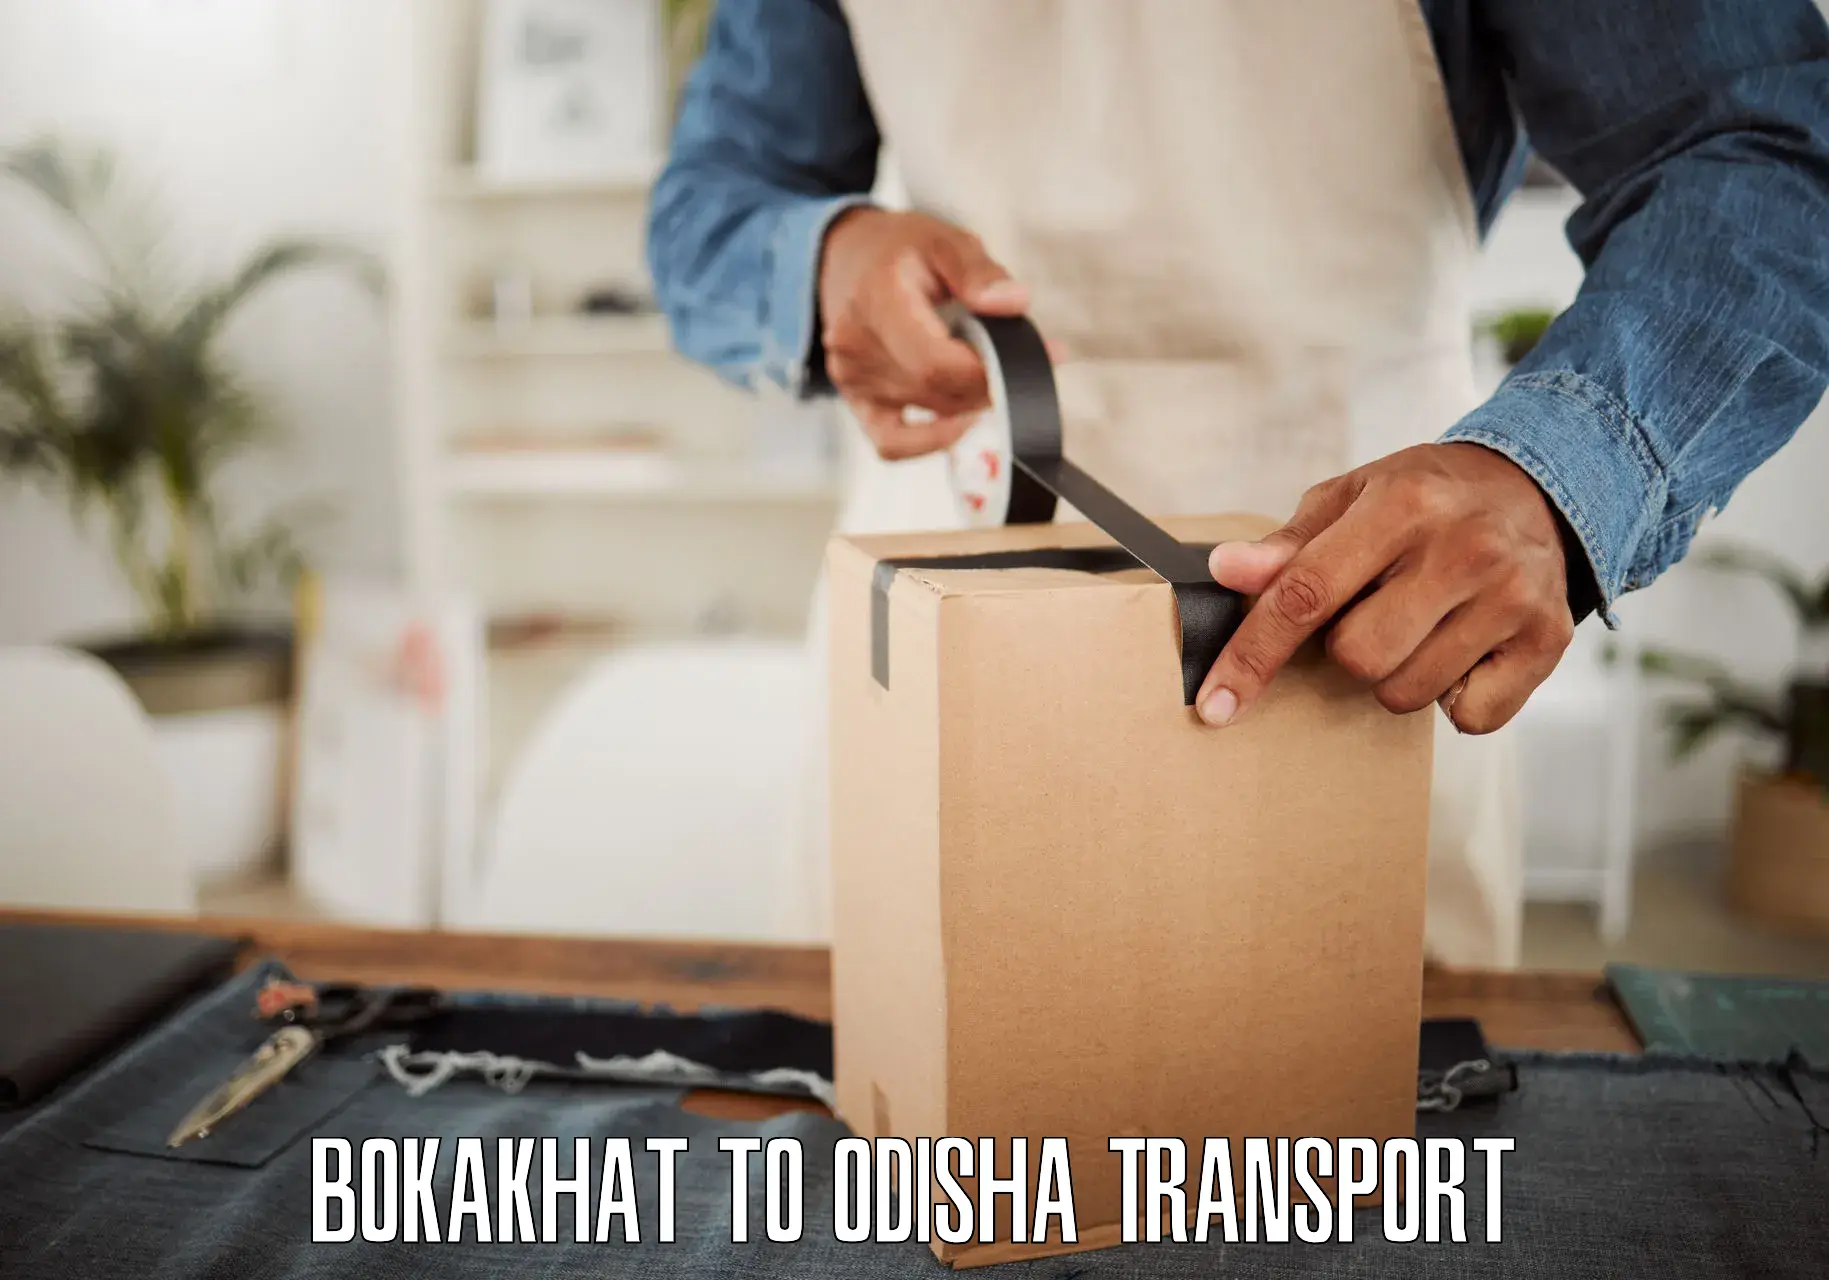 Land transport services Bokakhat to Baleswar